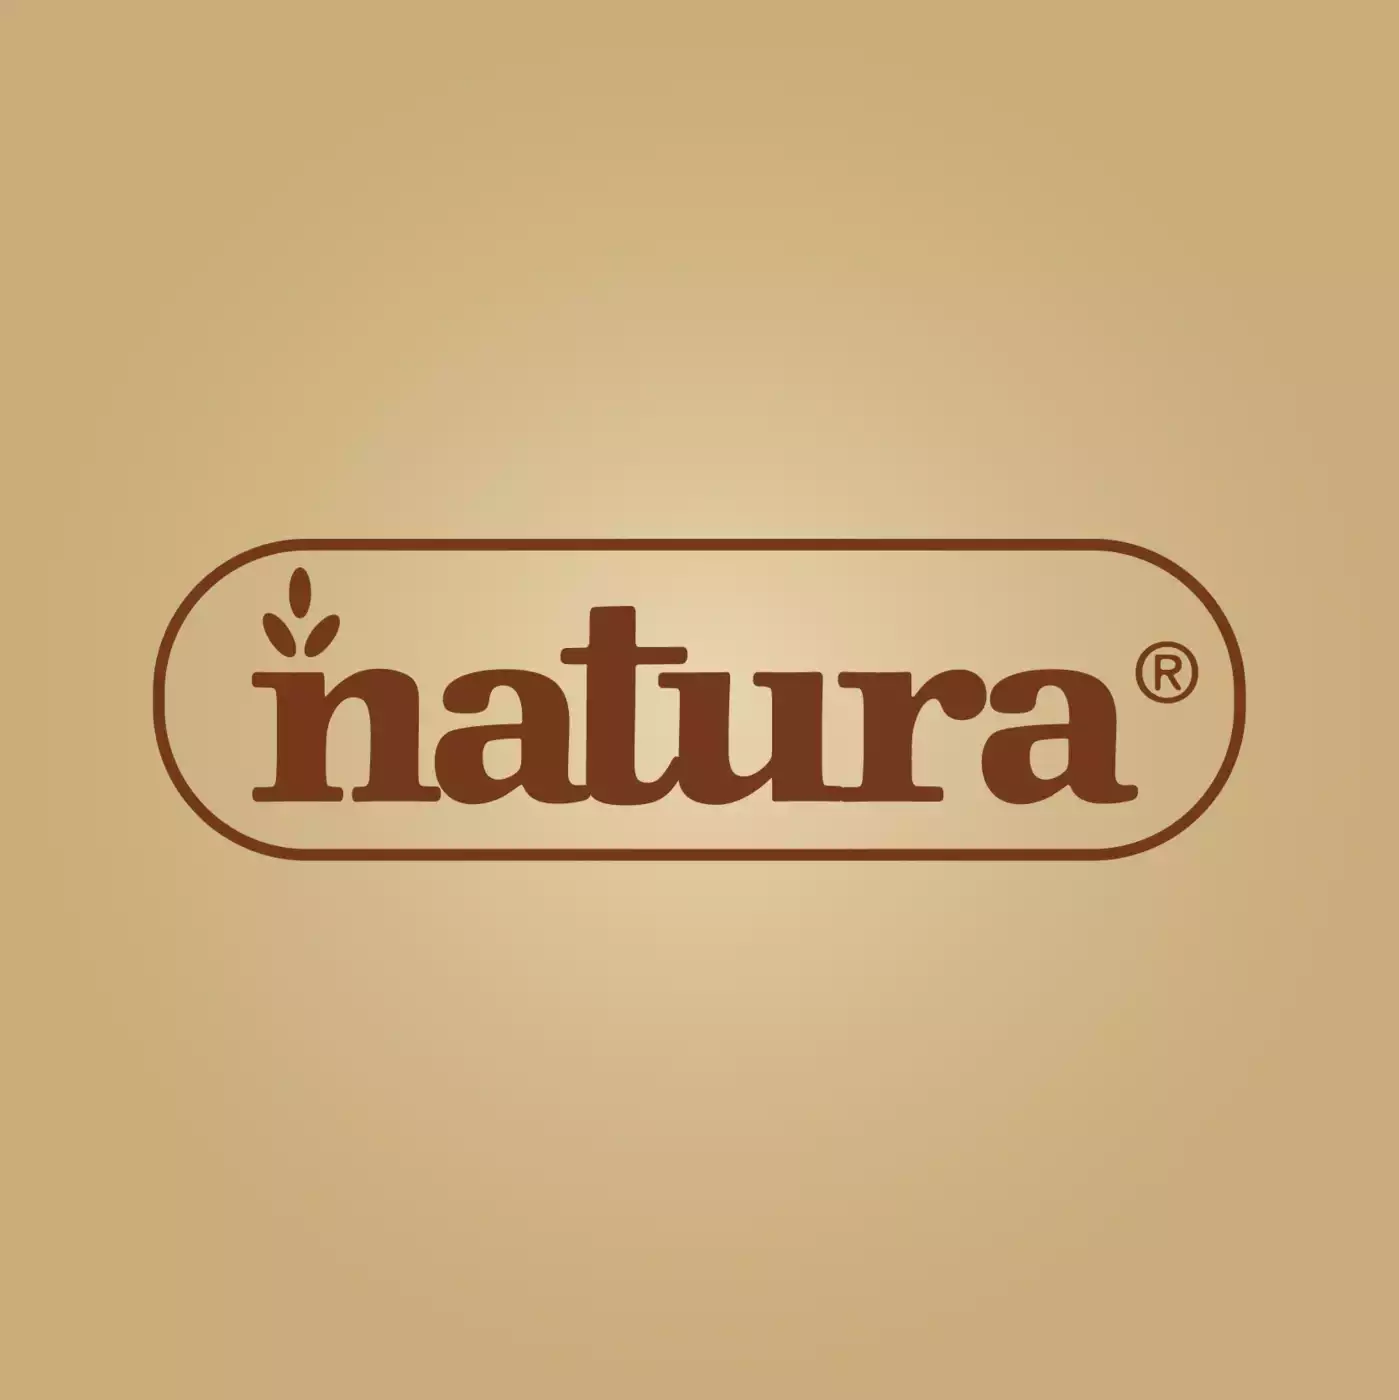 Web_Natura_1-1.jpg.webp